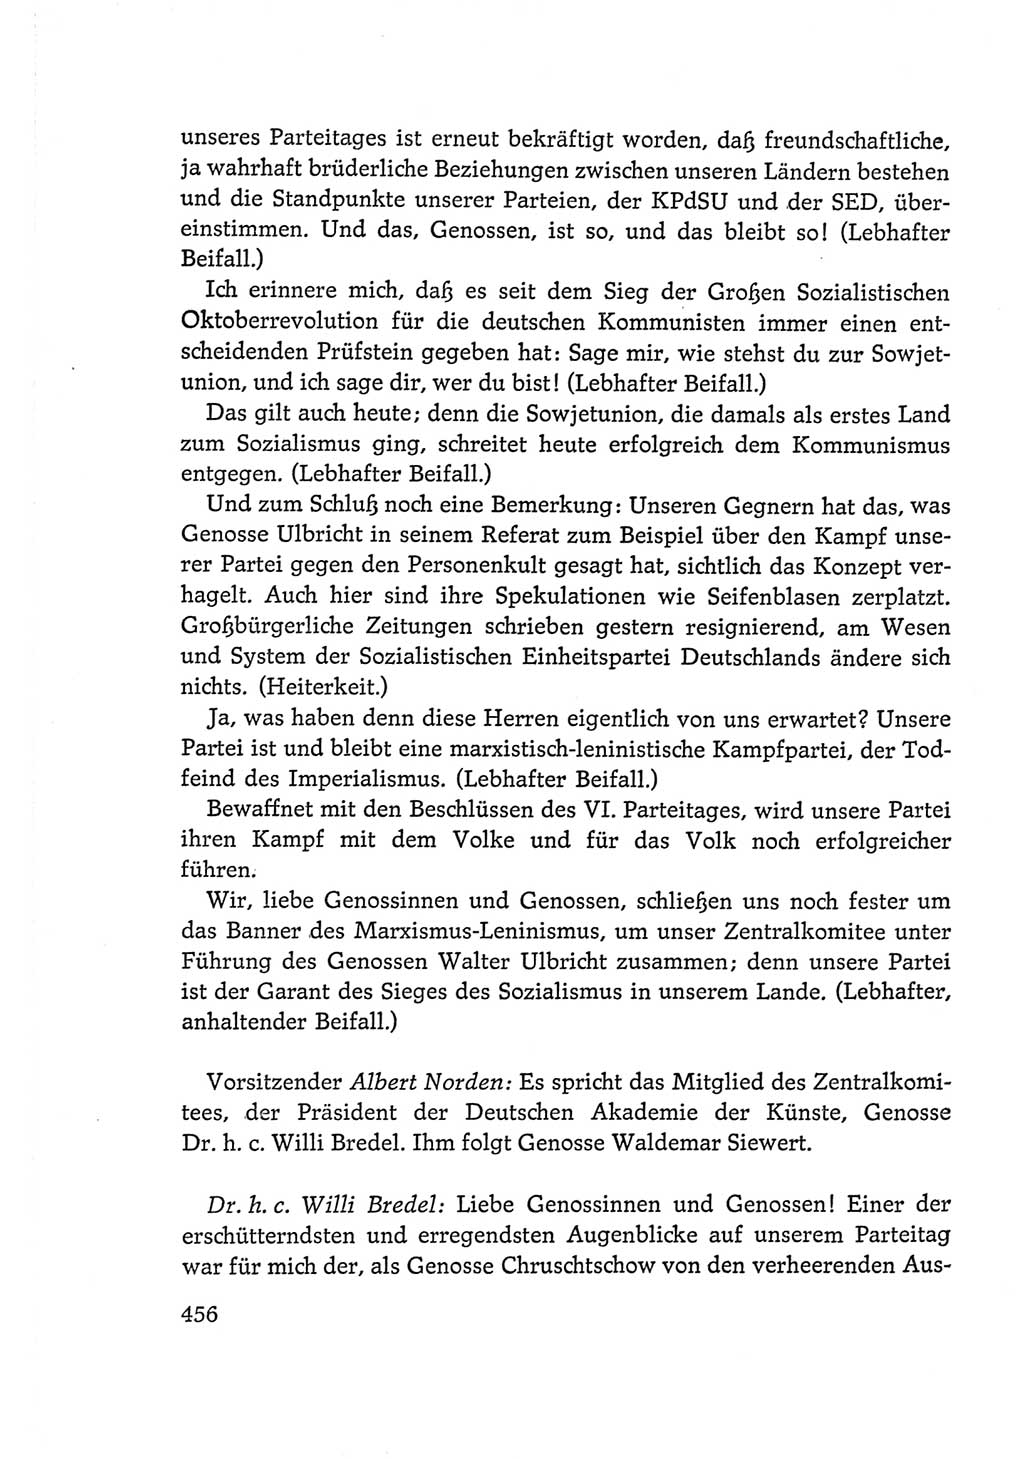 Protokoll der Verhandlungen des Ⅵ. Parteitages der Sozialistischen Einheitspartei Deutschlands (SED) [Deutsche Demokratische Republik (DDR)] 1963, Band Ⅰ, Seite 456 (Prot. Verh. Ⅵ. PT SED DDR 1963, Bd. Ⅰ, S. 456)